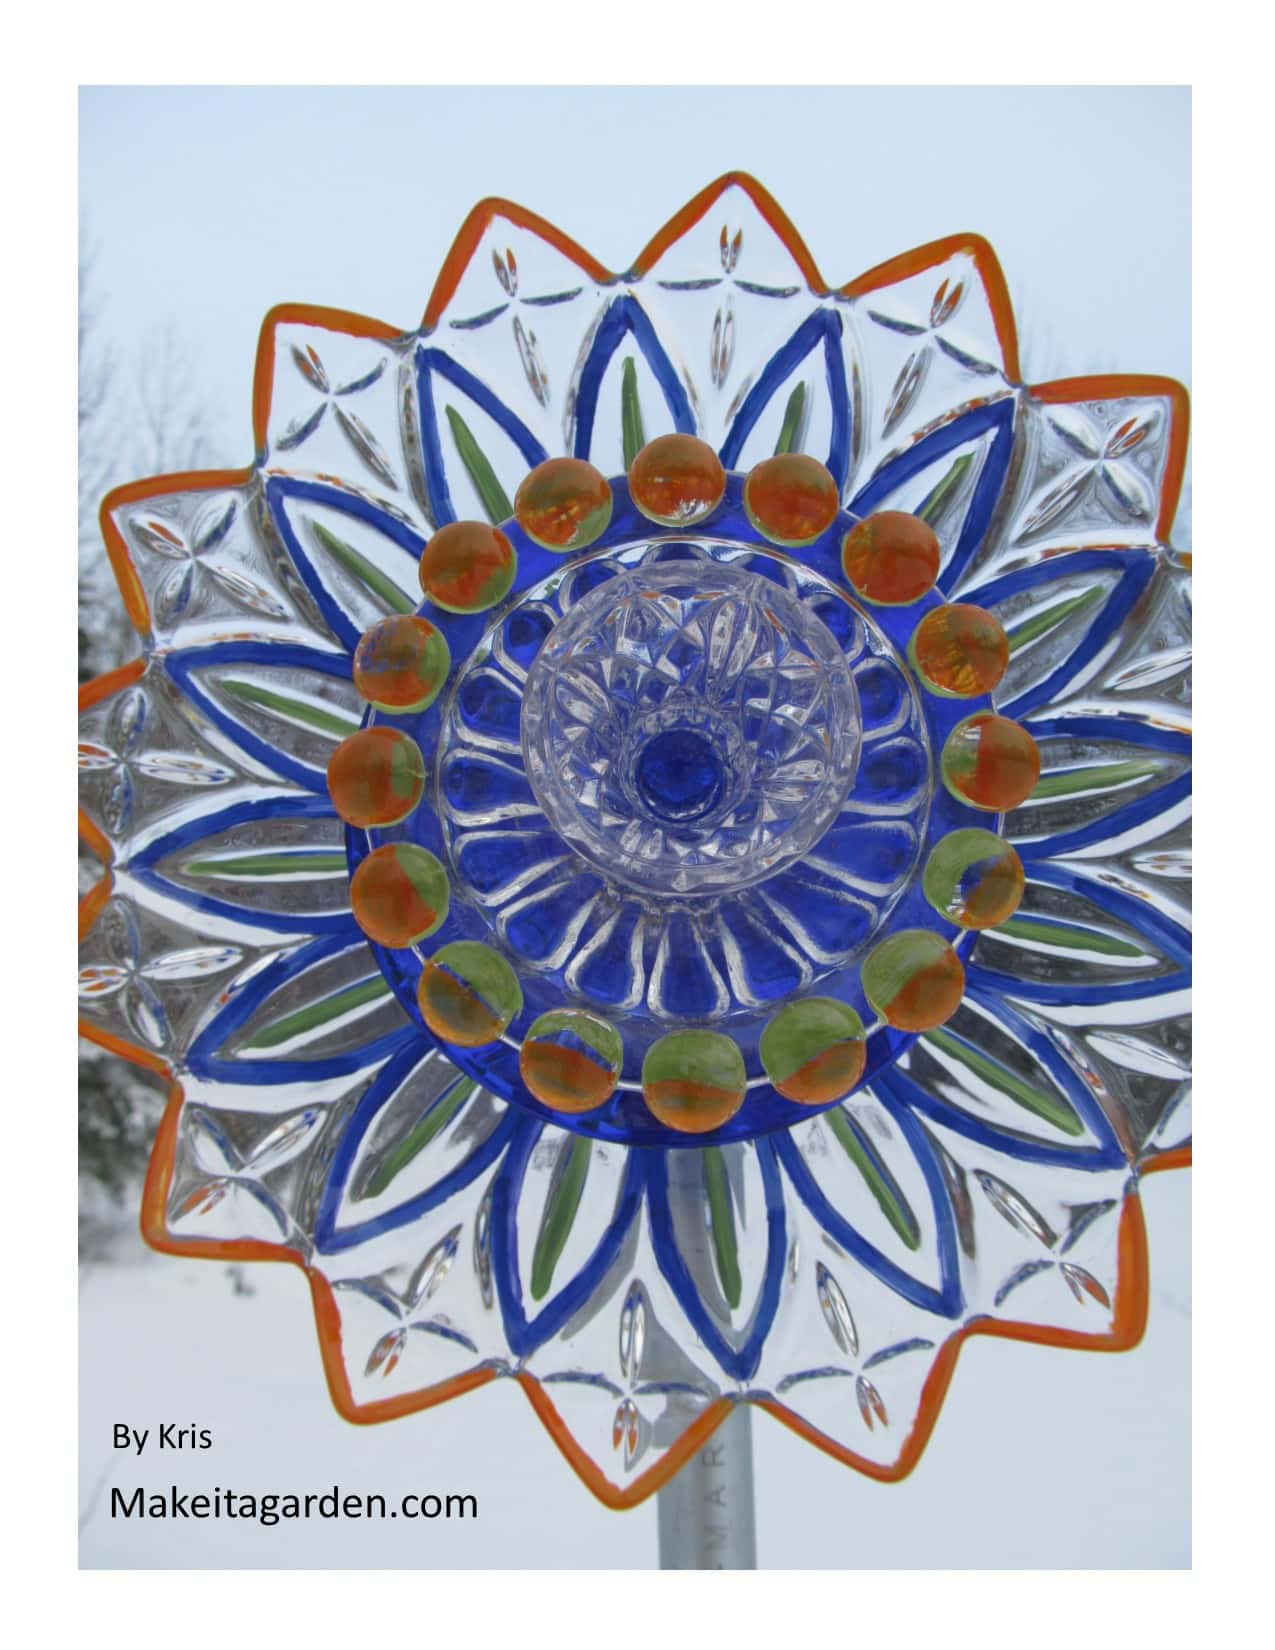 작가의 접시 꽃입니다. 유리 접시에 페인트하는 데 사용되는 예쁜 꽃 모양의 유리 그릇